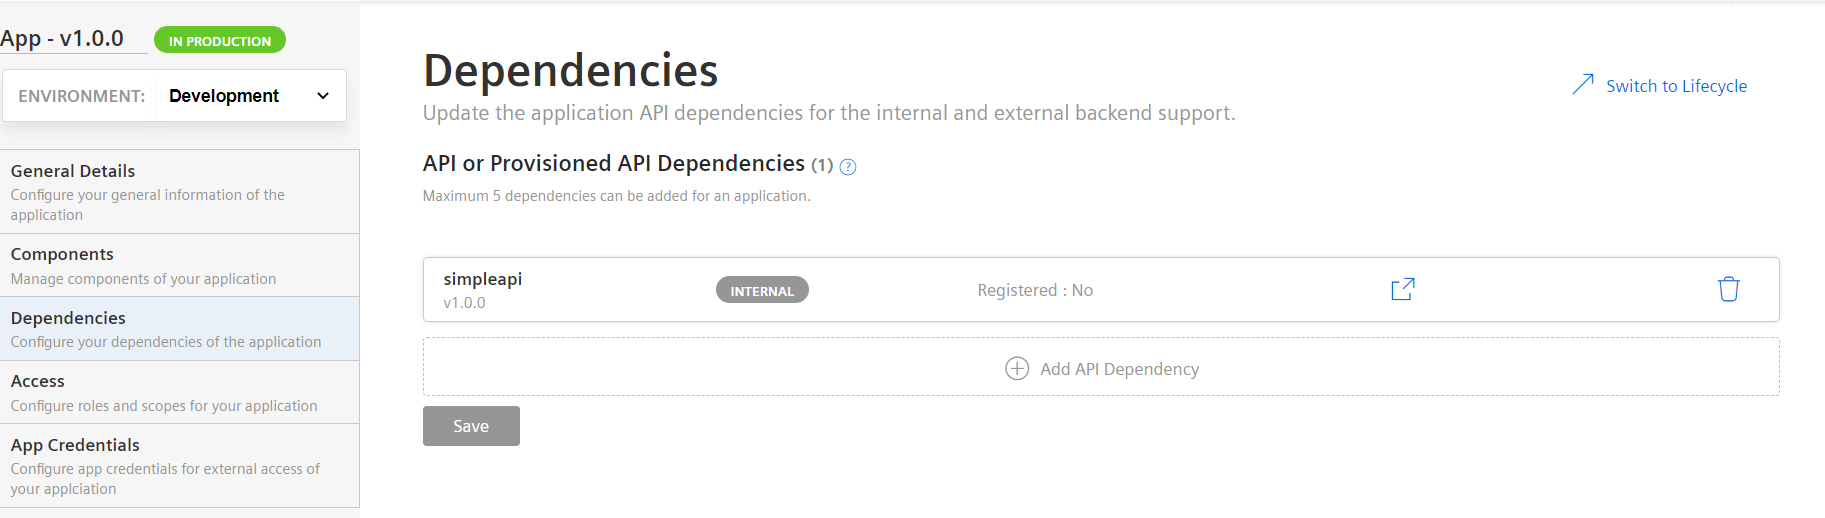 view-dependencies